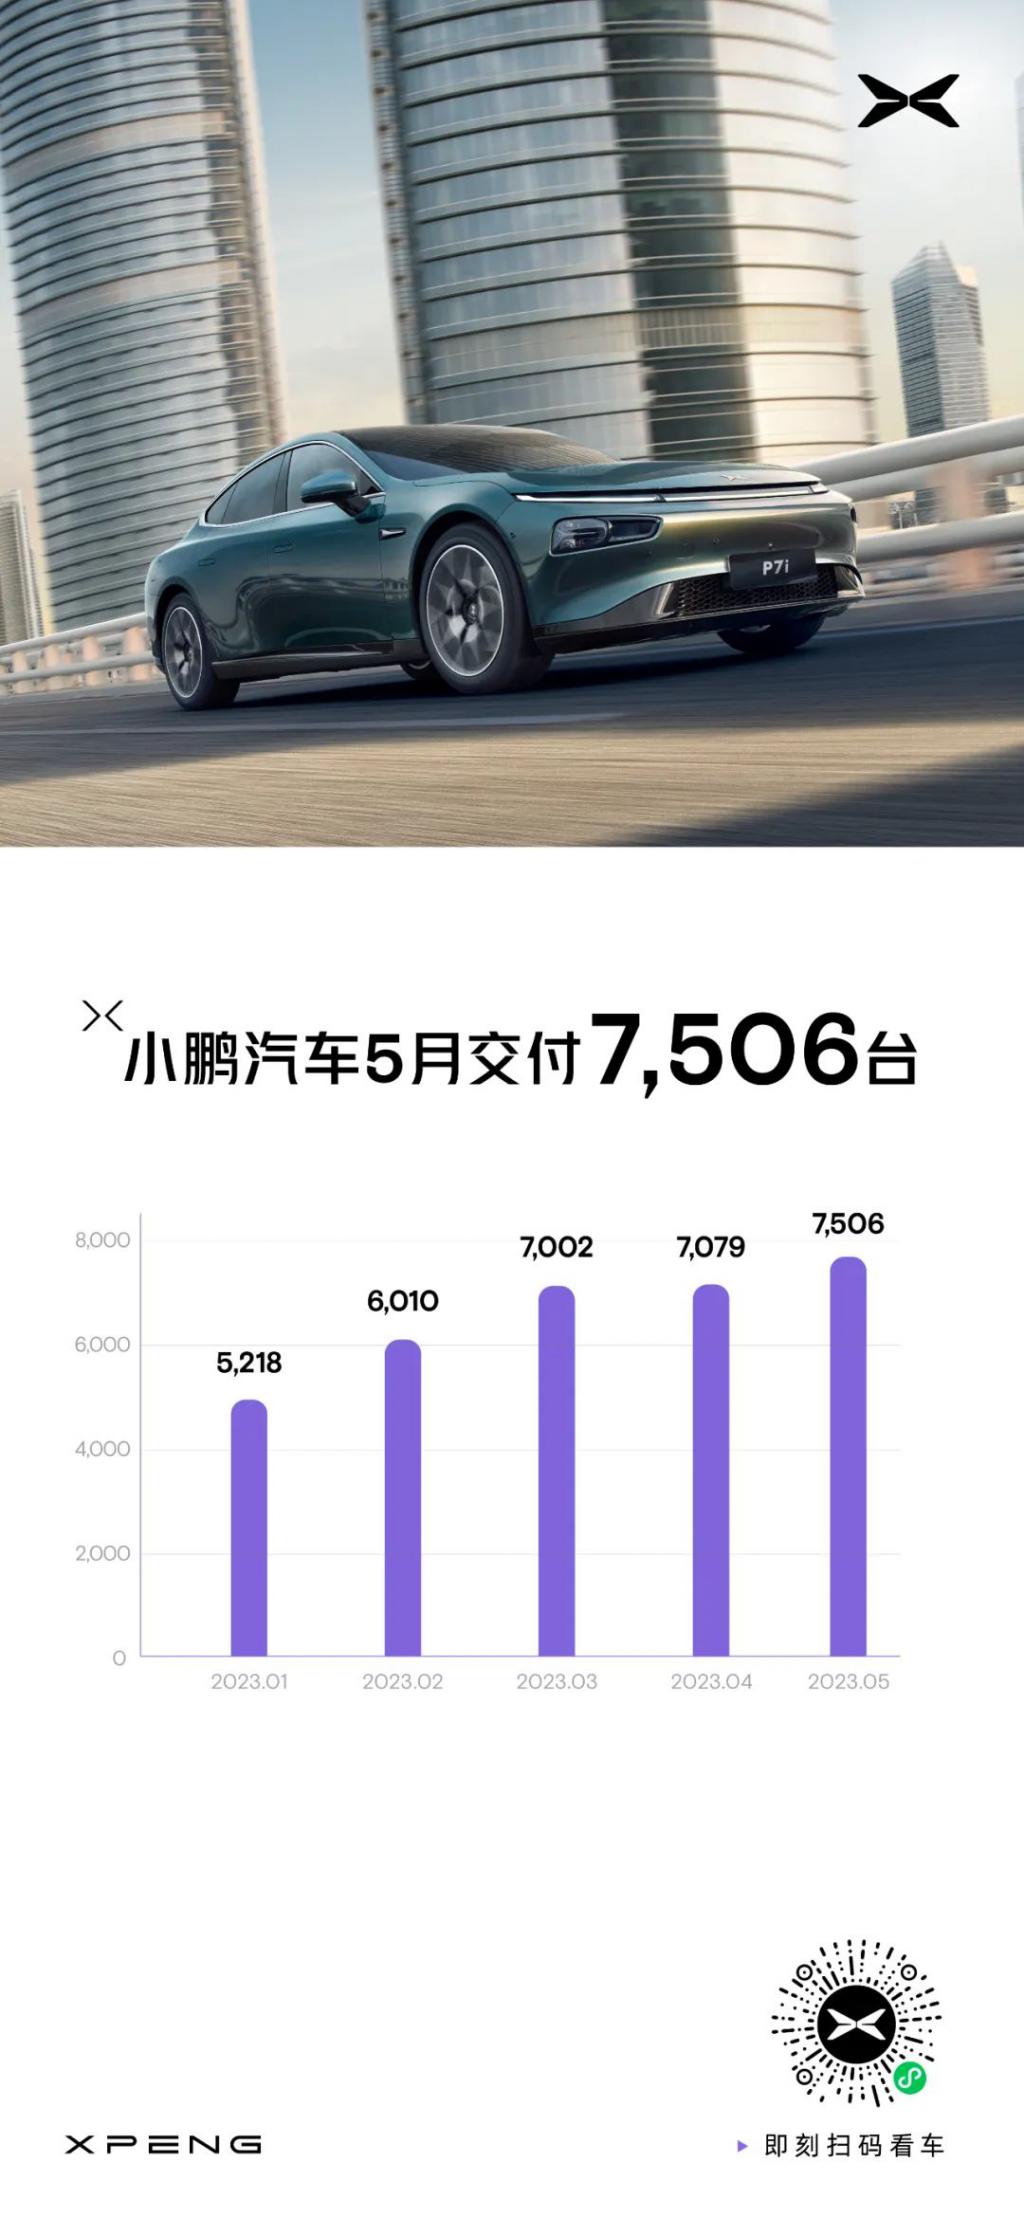 小鹏汽车 5 月共交付新车 7506 台，环比增长 6%